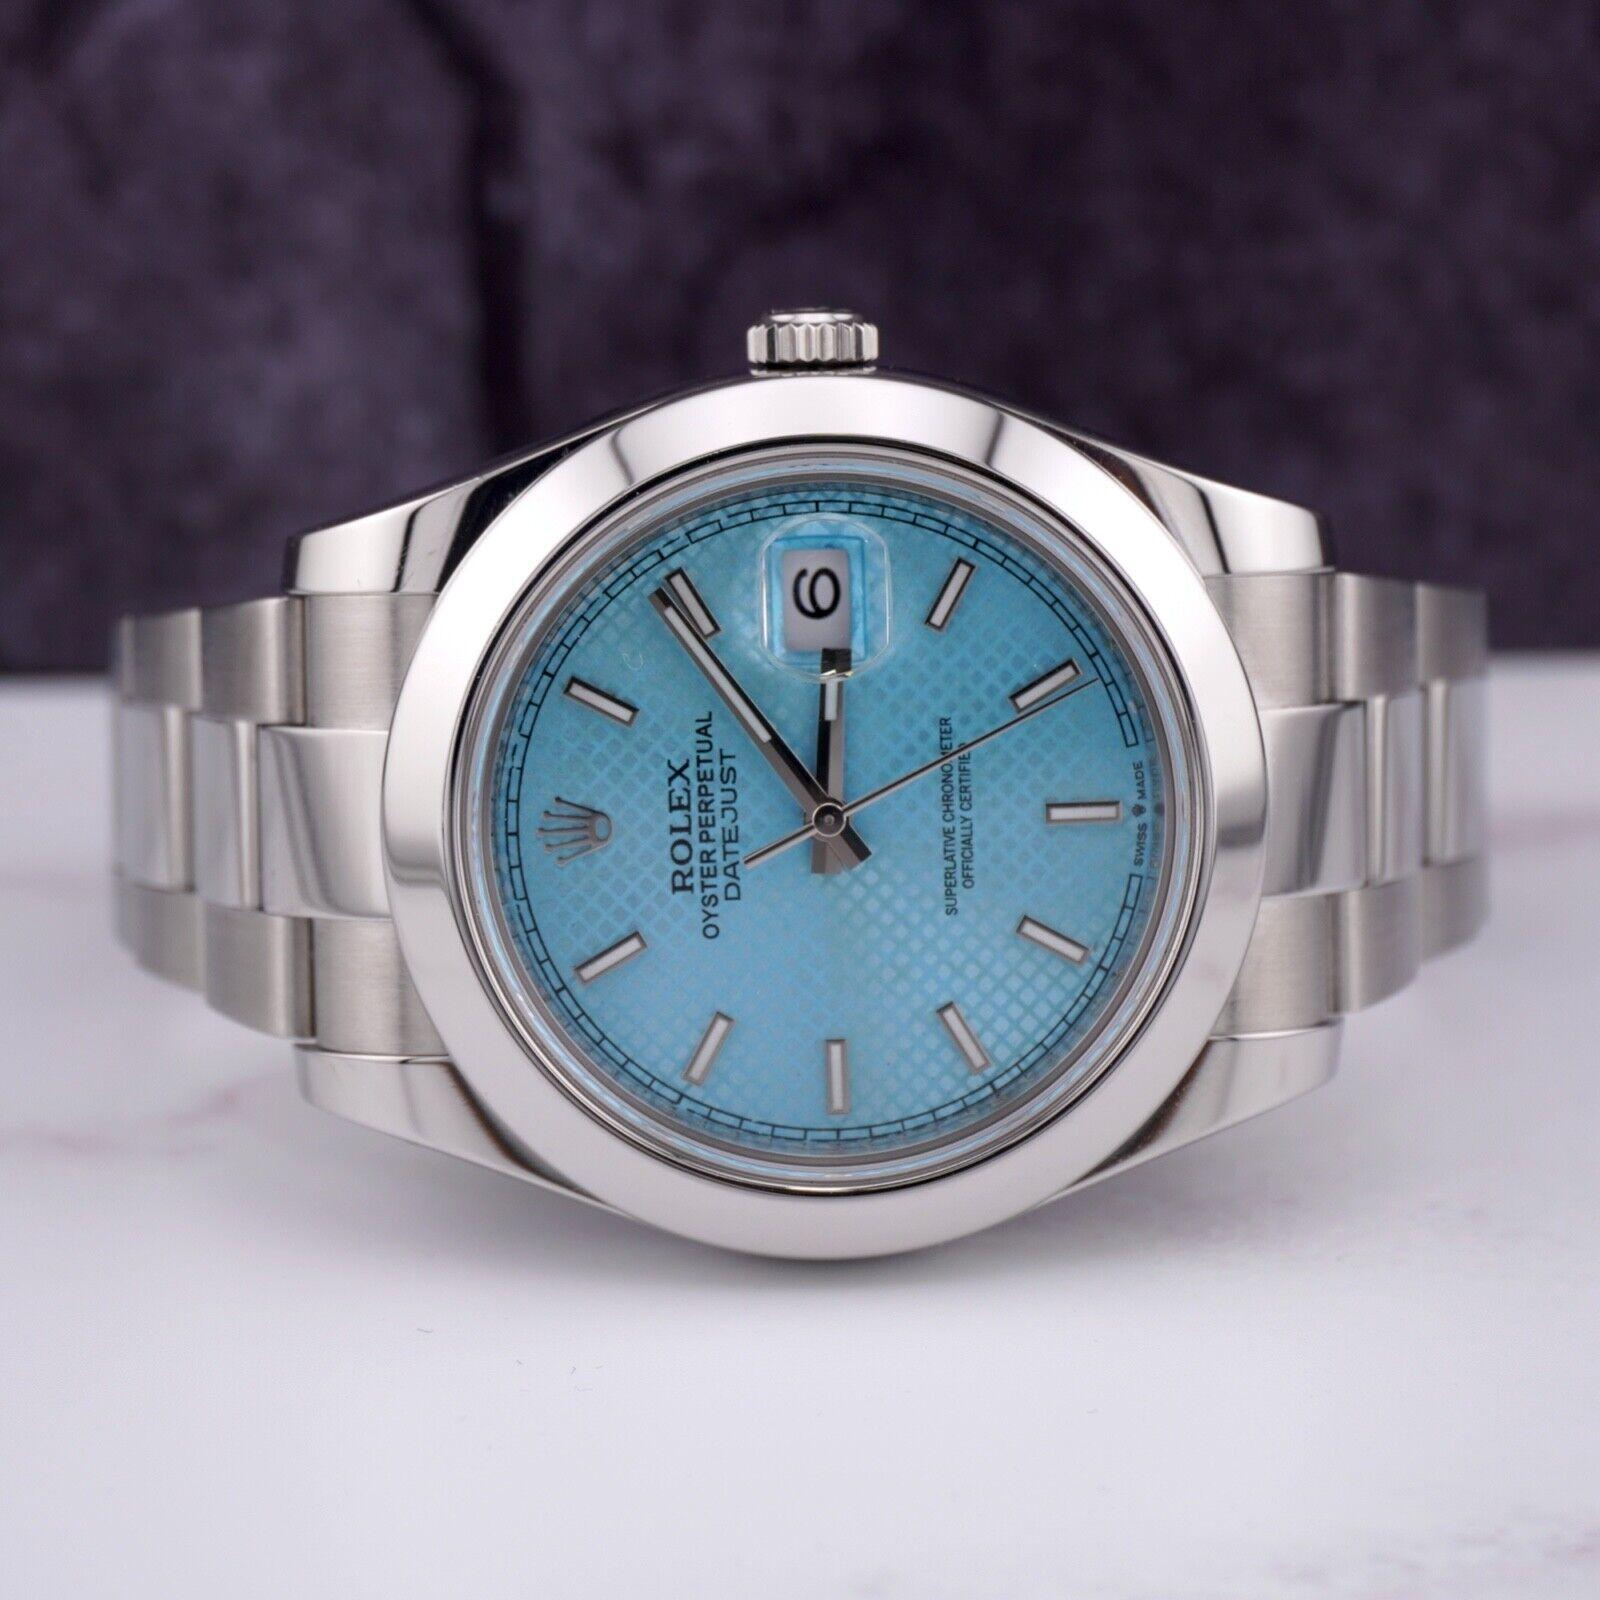 Montre Rolex Datejust 41mm. Une montre d'occasion avec boîte d'origine et papiers 2013. La montre est 100% authentique et est accompagnée d'une carte d'authenticité. La référence de la montre est 116300 et elle est en excellent état (voir photos).